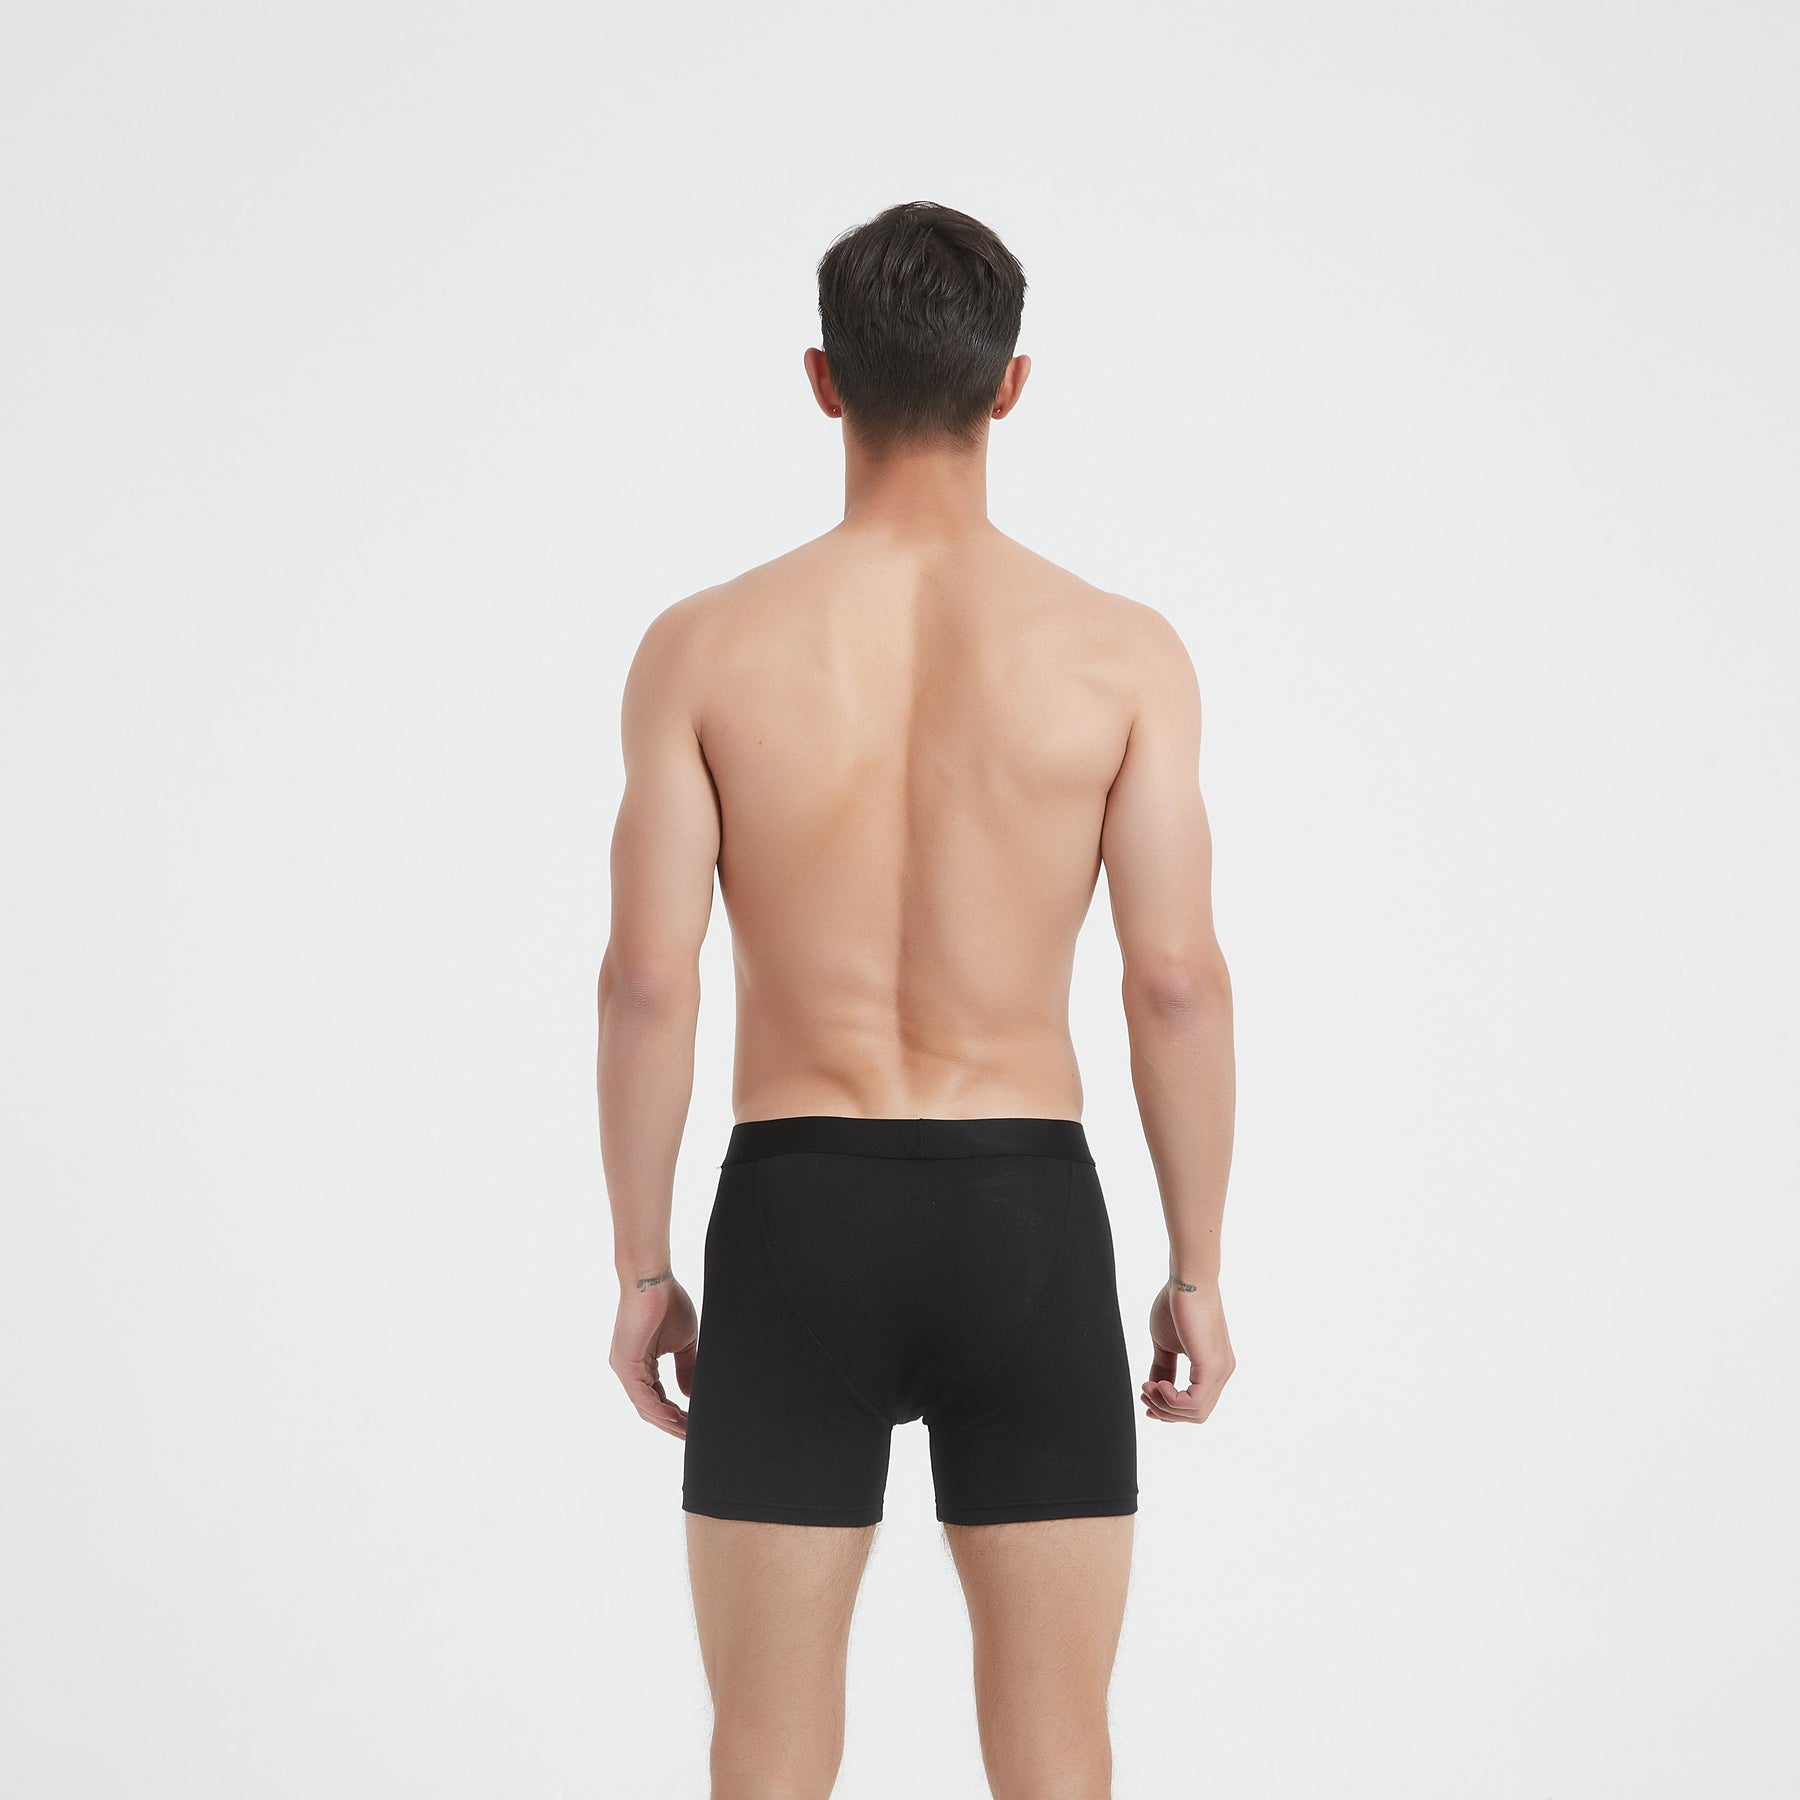 Back view of EMF Shielding Underwear boxer brief